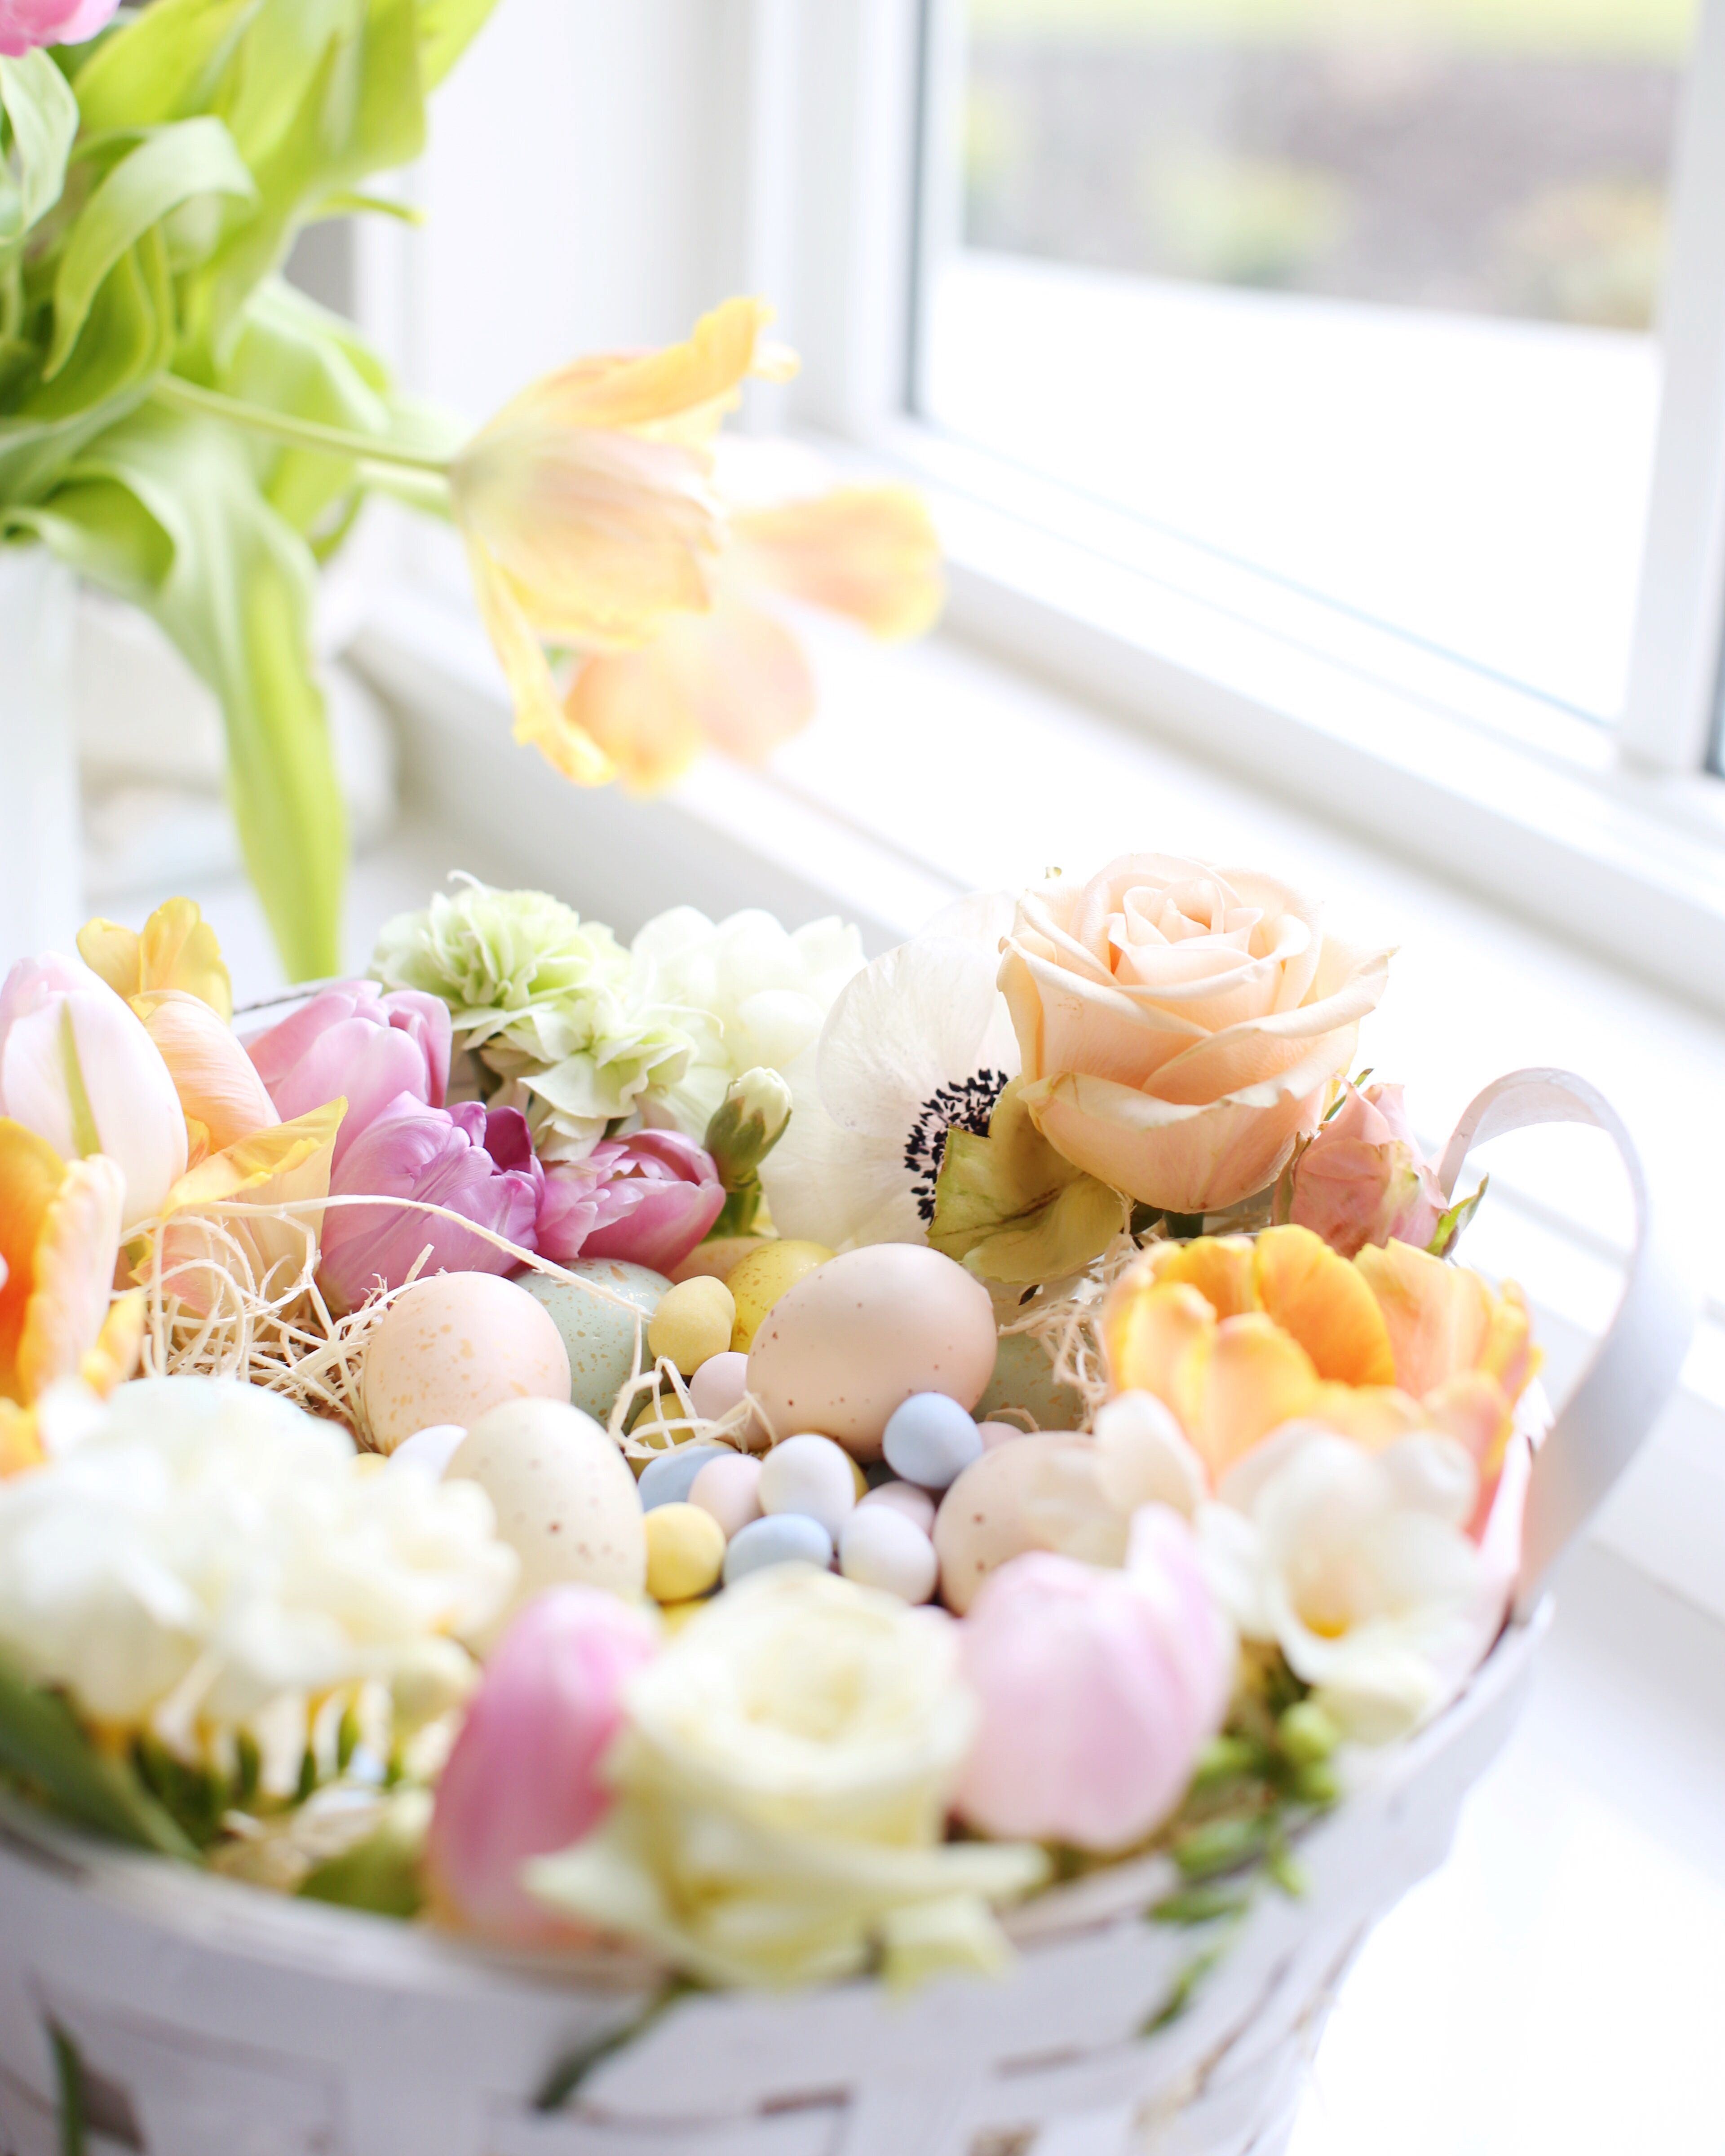 Floral Easter Basket